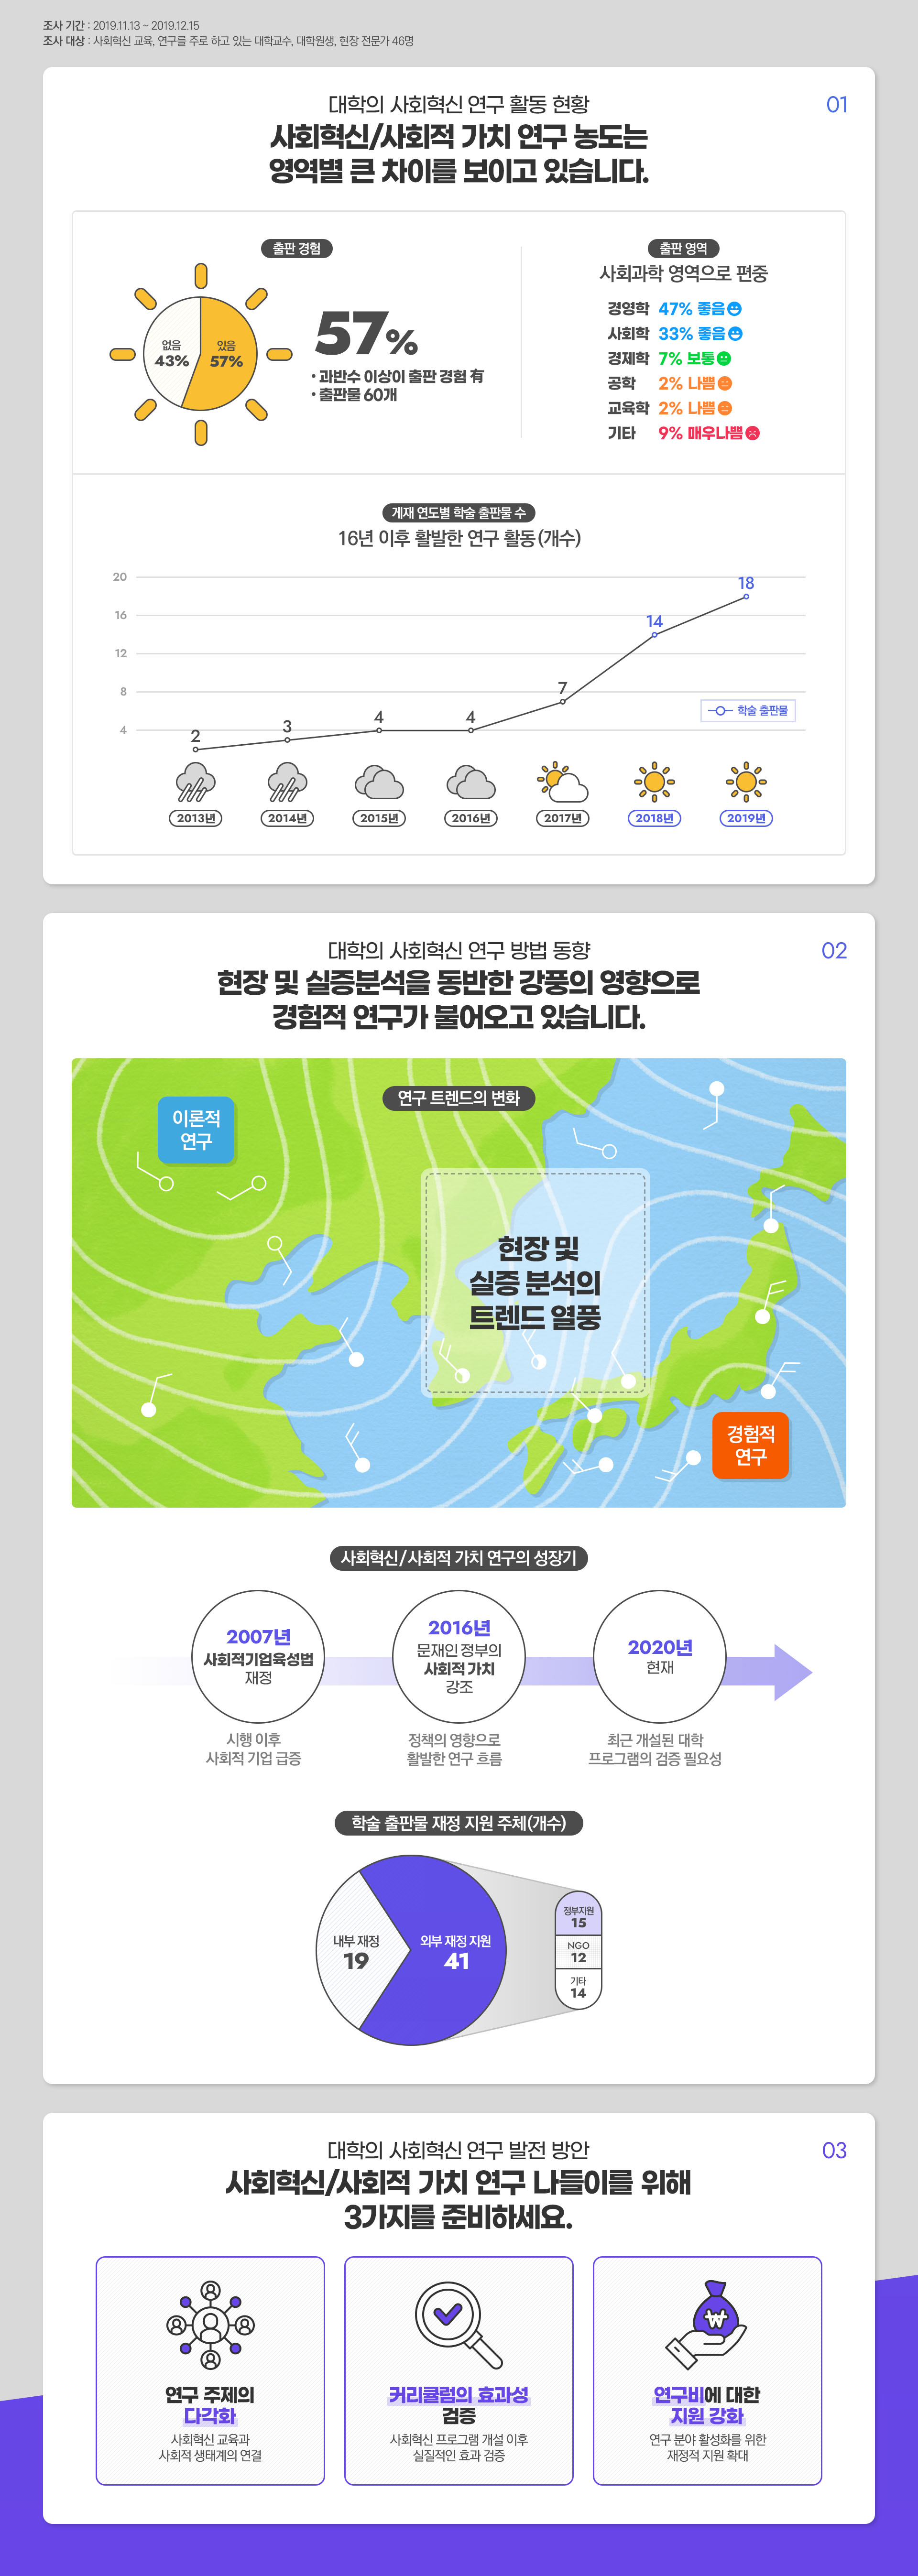 한국 대학의 역할, 사회혁신 기상예보 (연구편)입니다. 자세한 내용은 해당 이미지 하단의 내용을 참고하세요.